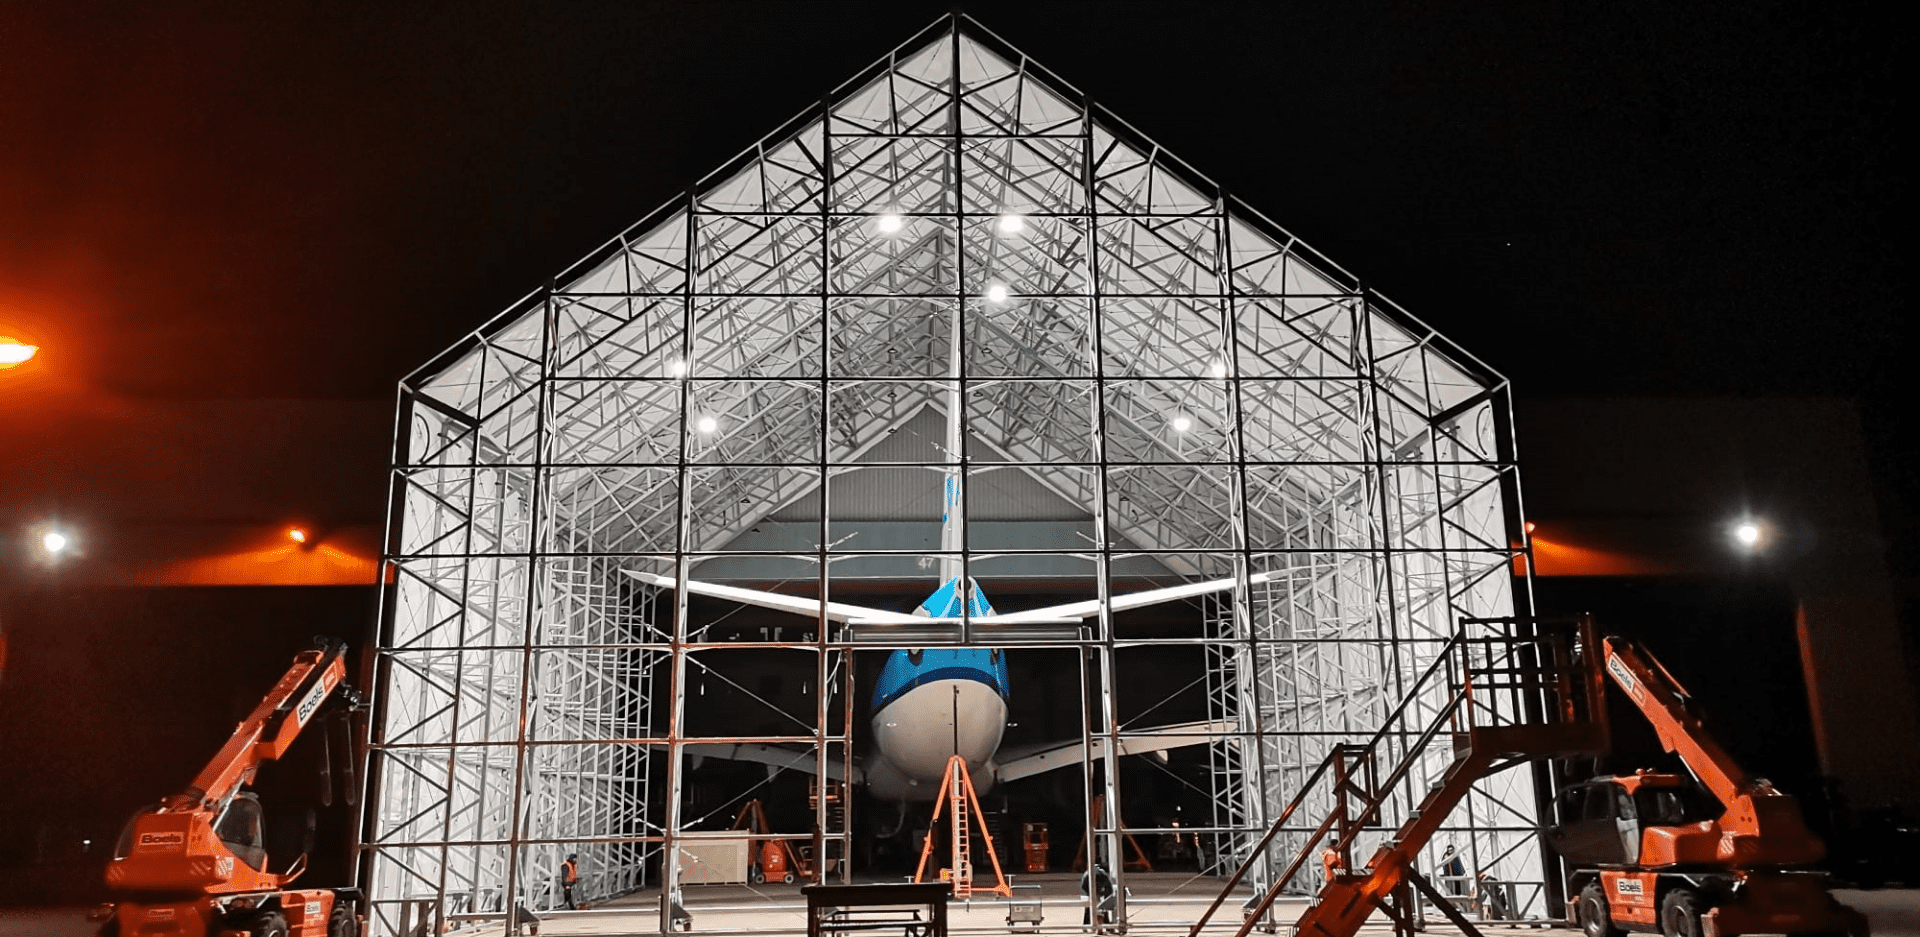 Aviolanda: Eine bewegliche Lösung für die Wartung größerer Flugzeuge